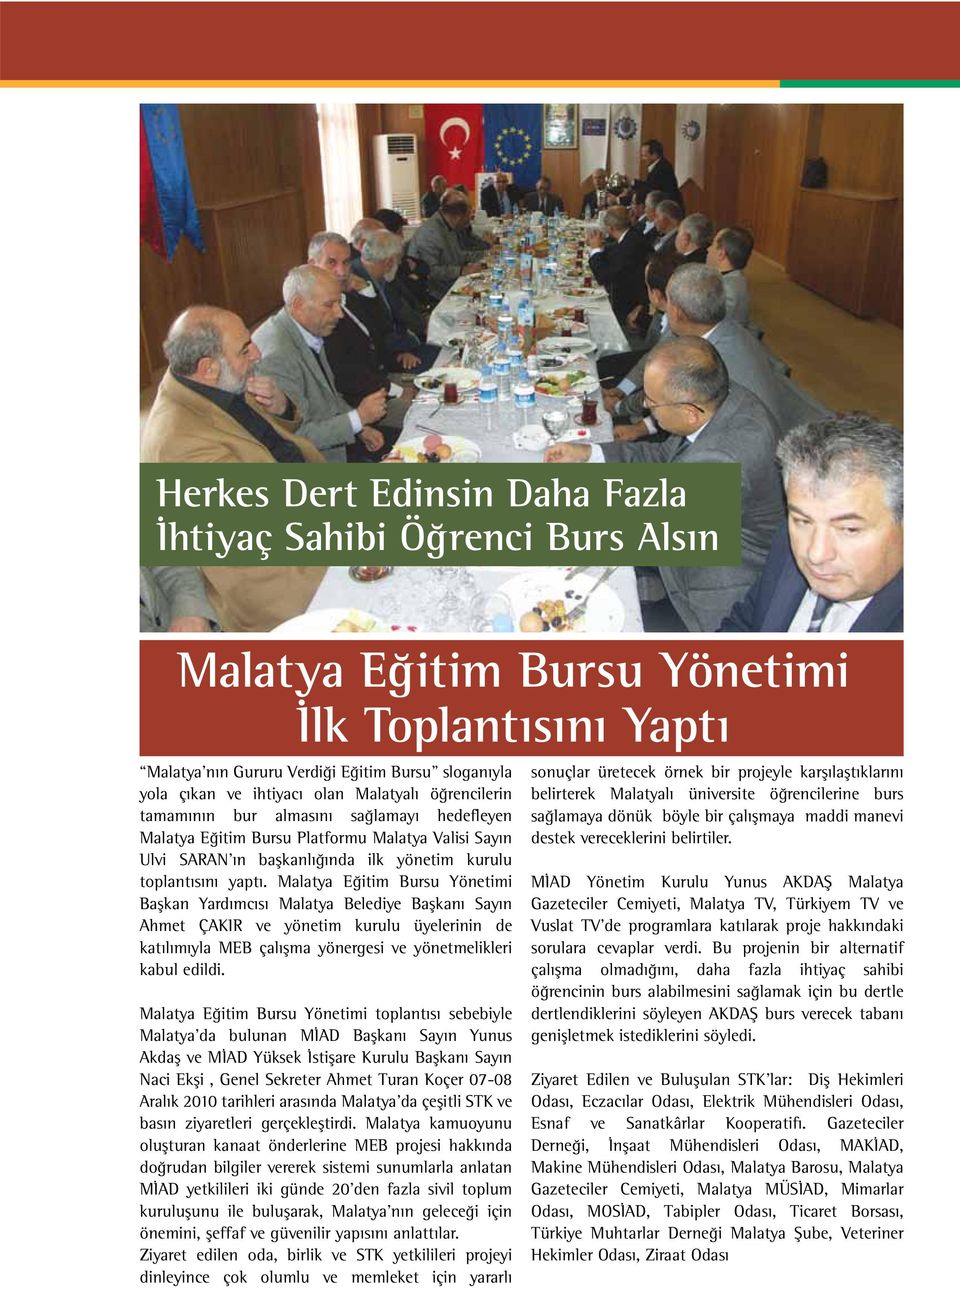 Malatya Eğitim Bursu Yönetimi Başkan Yardımcısı Malatya Belediye Başkanı Sayın Ahmet ÇAKIR ve yönetim kurulu üyelerinin de katılımıyla MEB çalışma yönergesi ve yönetmelikleri kabul edildi.